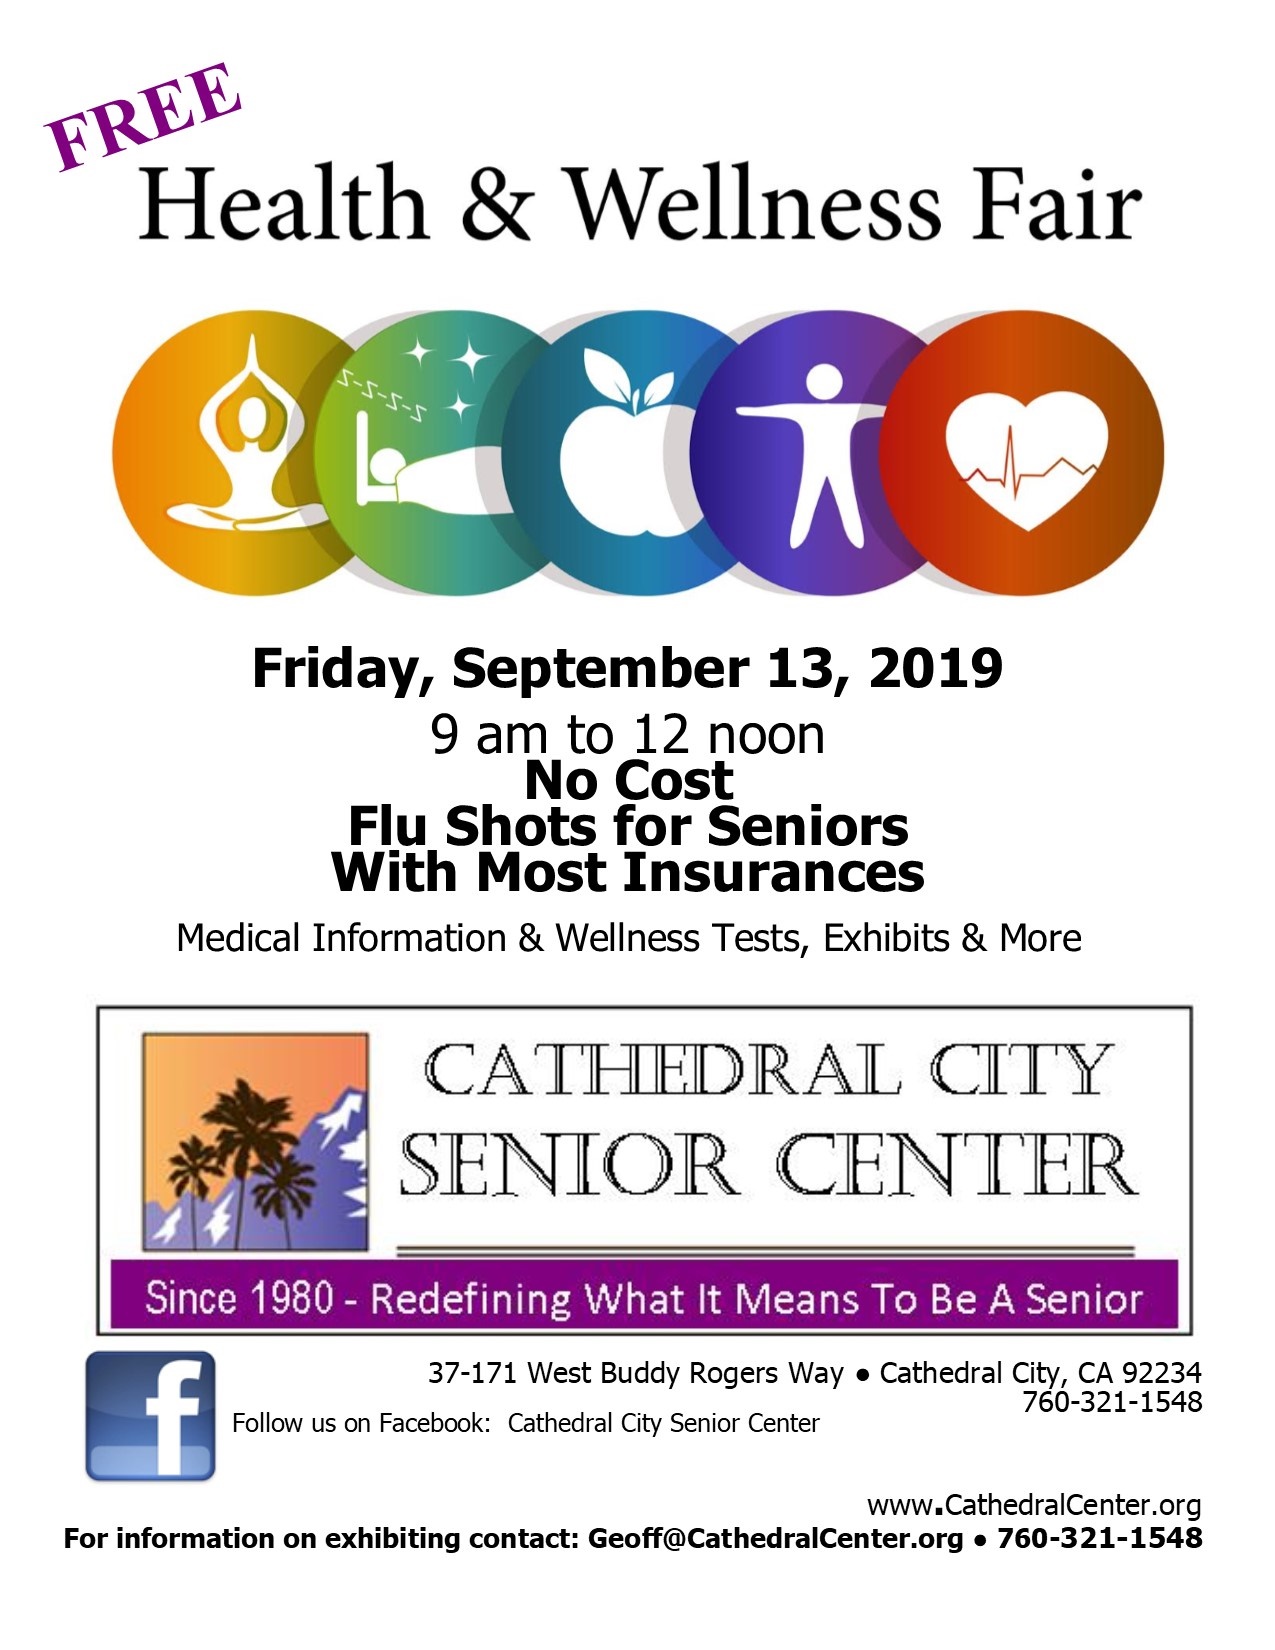 Cathedral City Senior Center Hosts A Health & Wellness Fair Discover